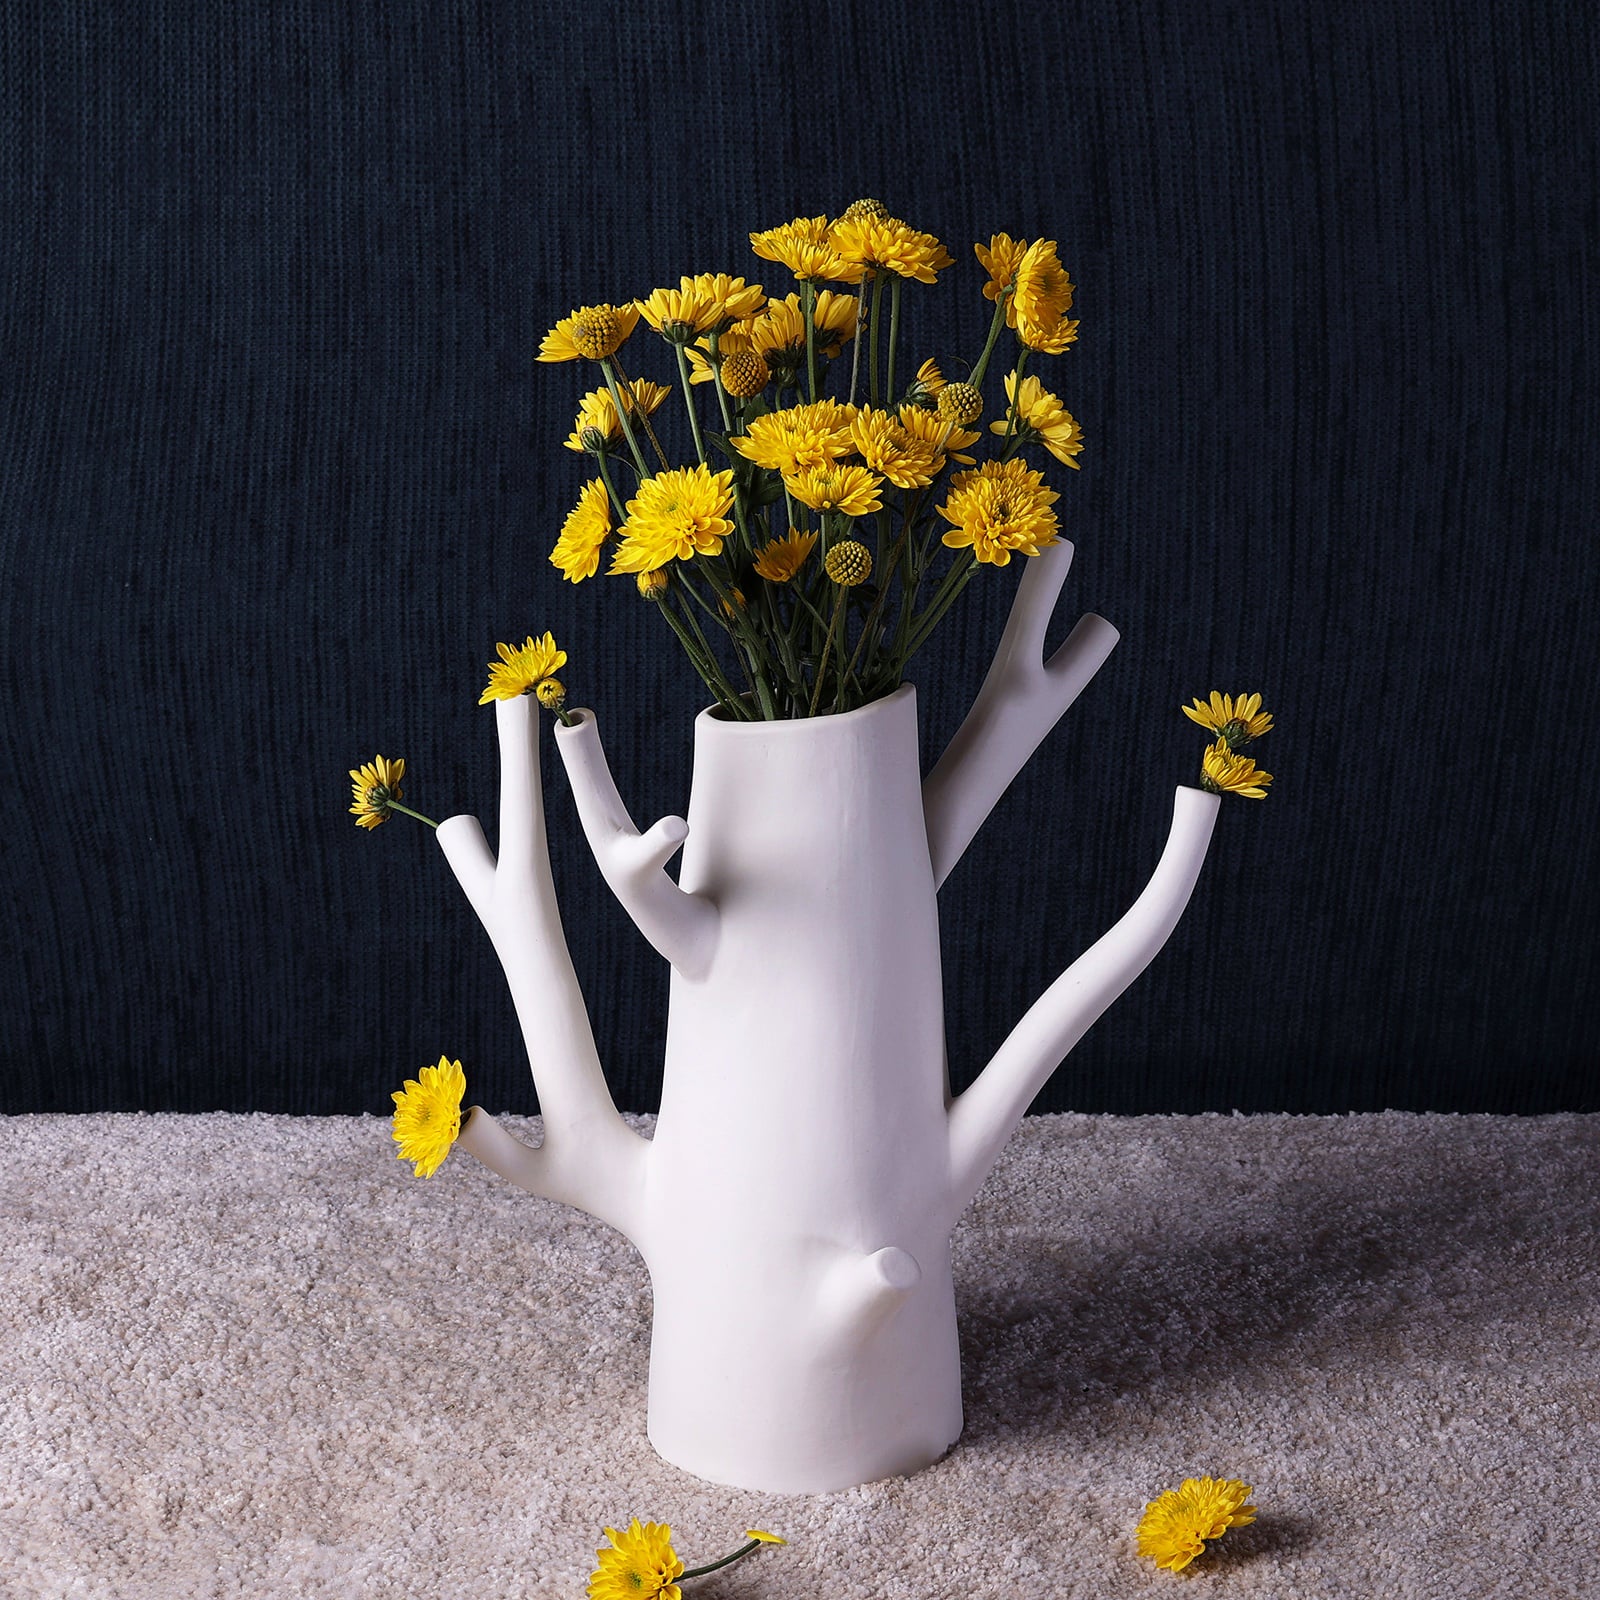 Ceramic vase welcomes unique flower arrangements like as florist